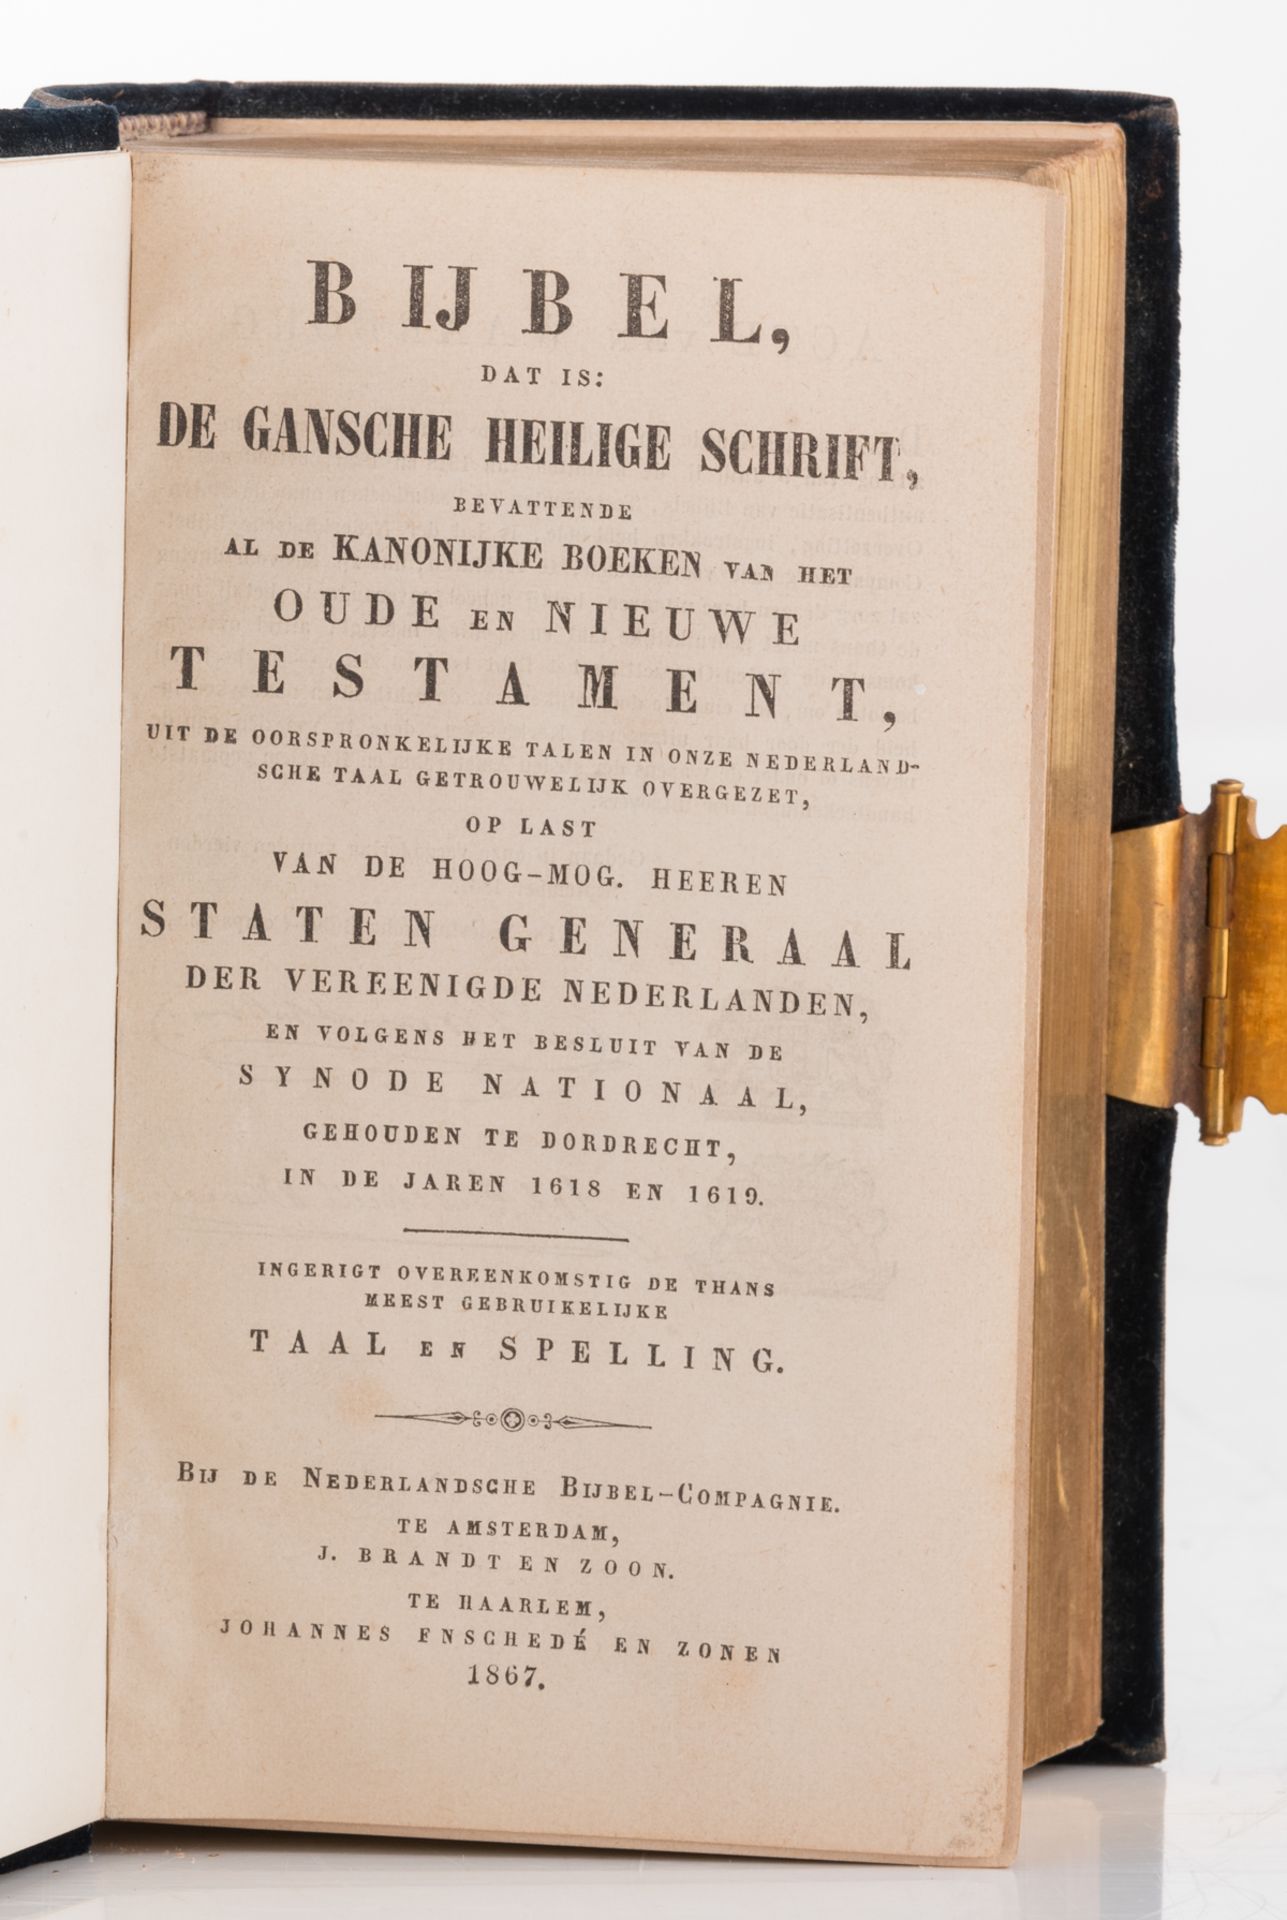 Statenbijbel, 'Nederlansche bijbel-compagnie Amsterdam-Haarlem 1867', with a velvet binding and gilt - Image 5 of 6